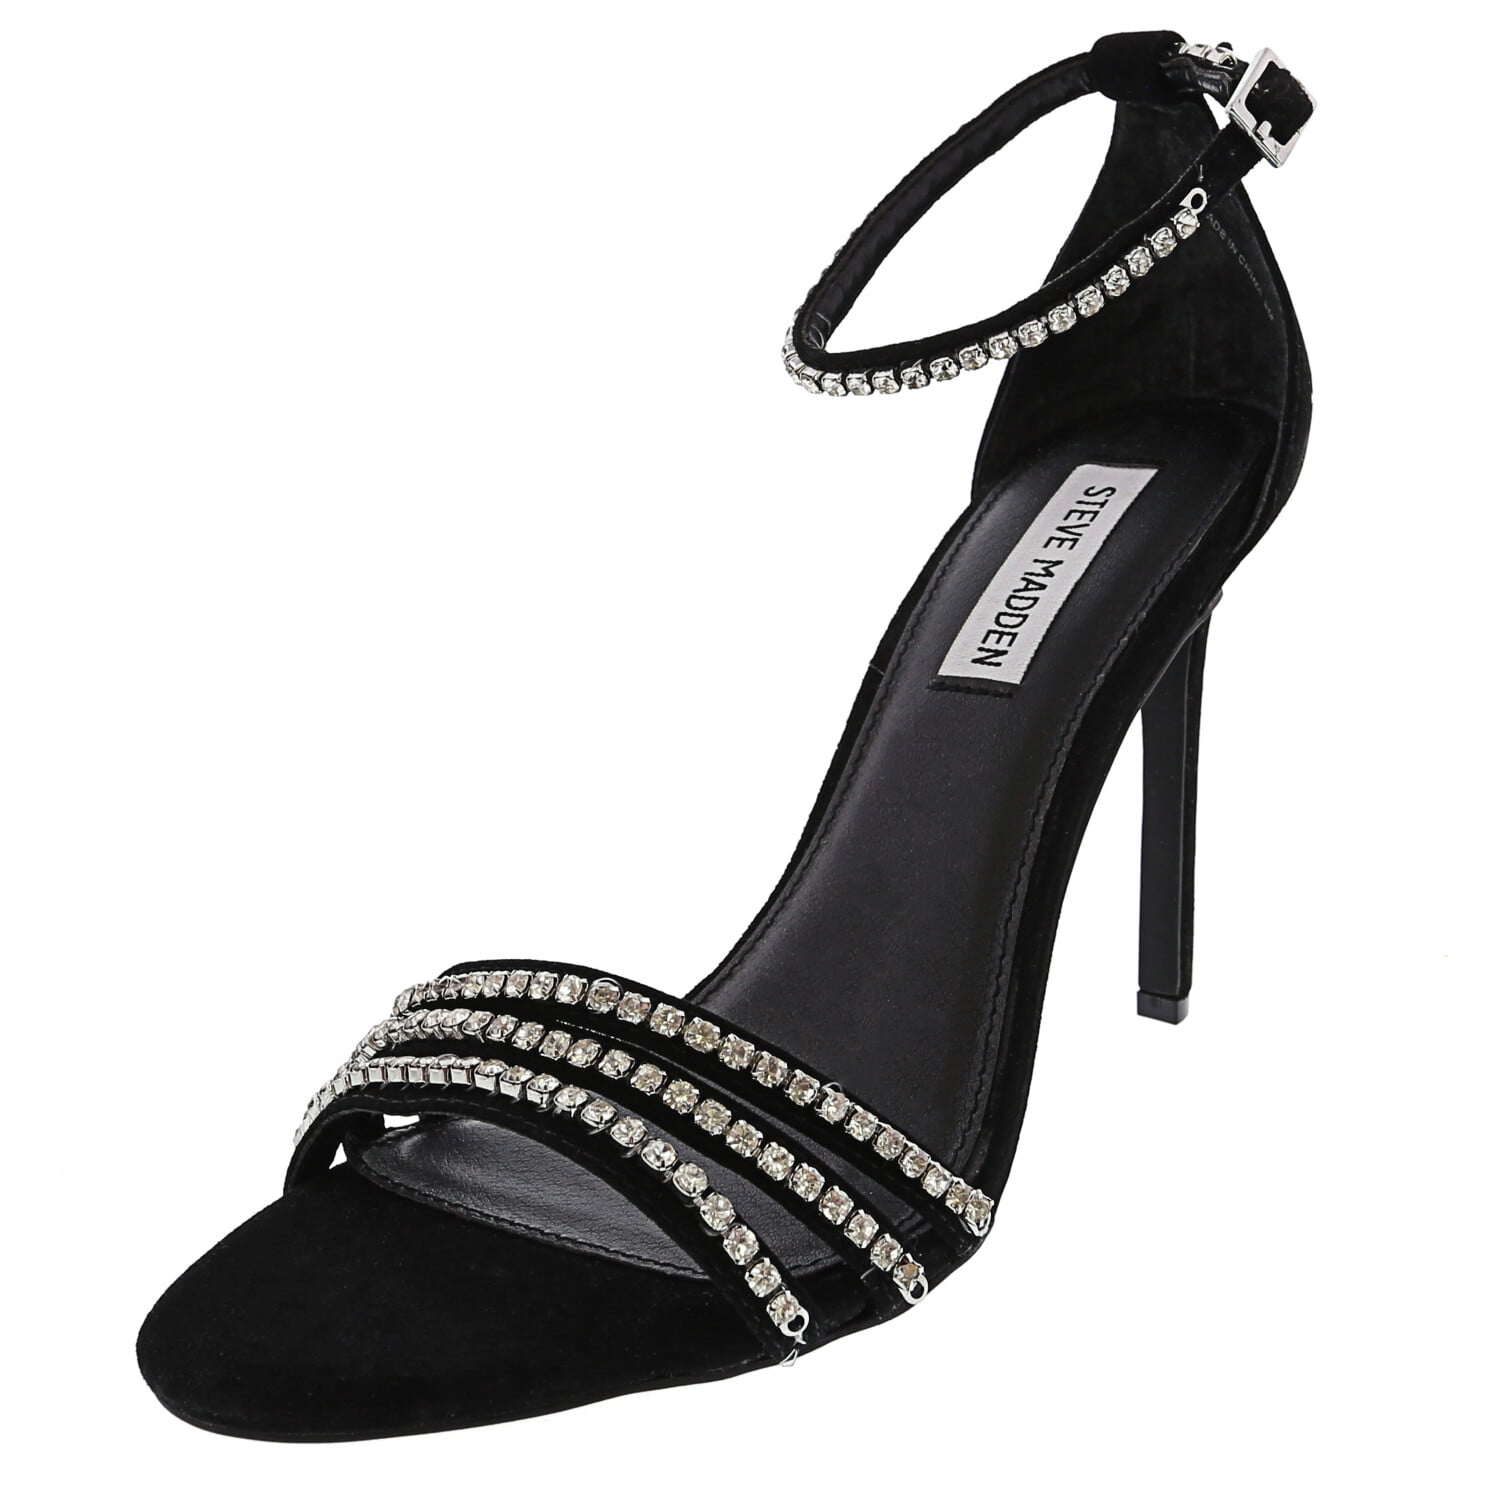 Steve Madden Women's Sterling Black Multi Ankle-High Leather Heel - 10M ...